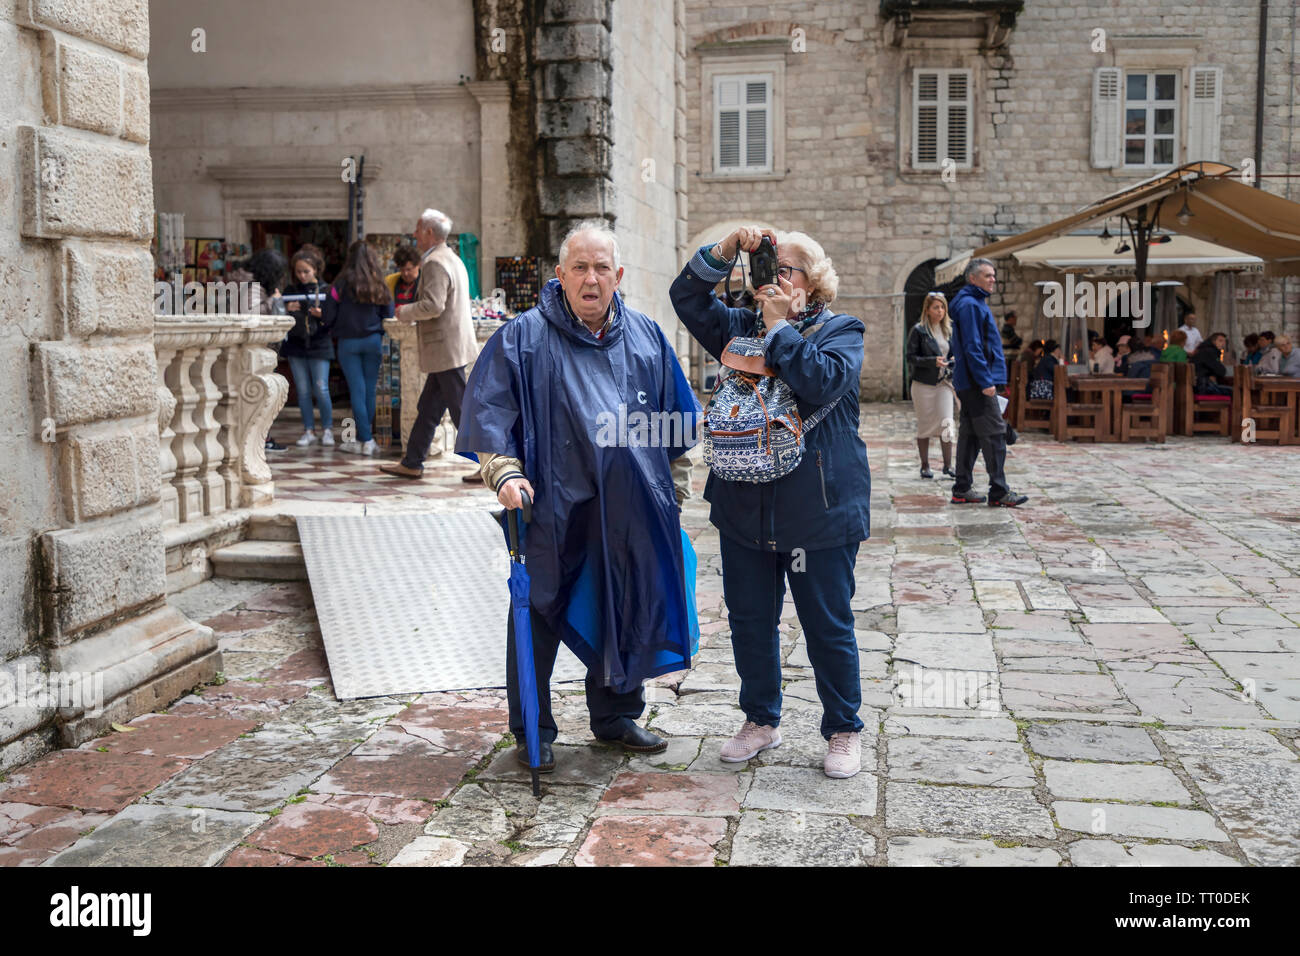 Montenegro, 30. April 2019: Street Scene mit einem älteren Paar Touristen auf dem Platz und die Besichtigung der Altstadt von Kotor, die ständigen Stockfoto